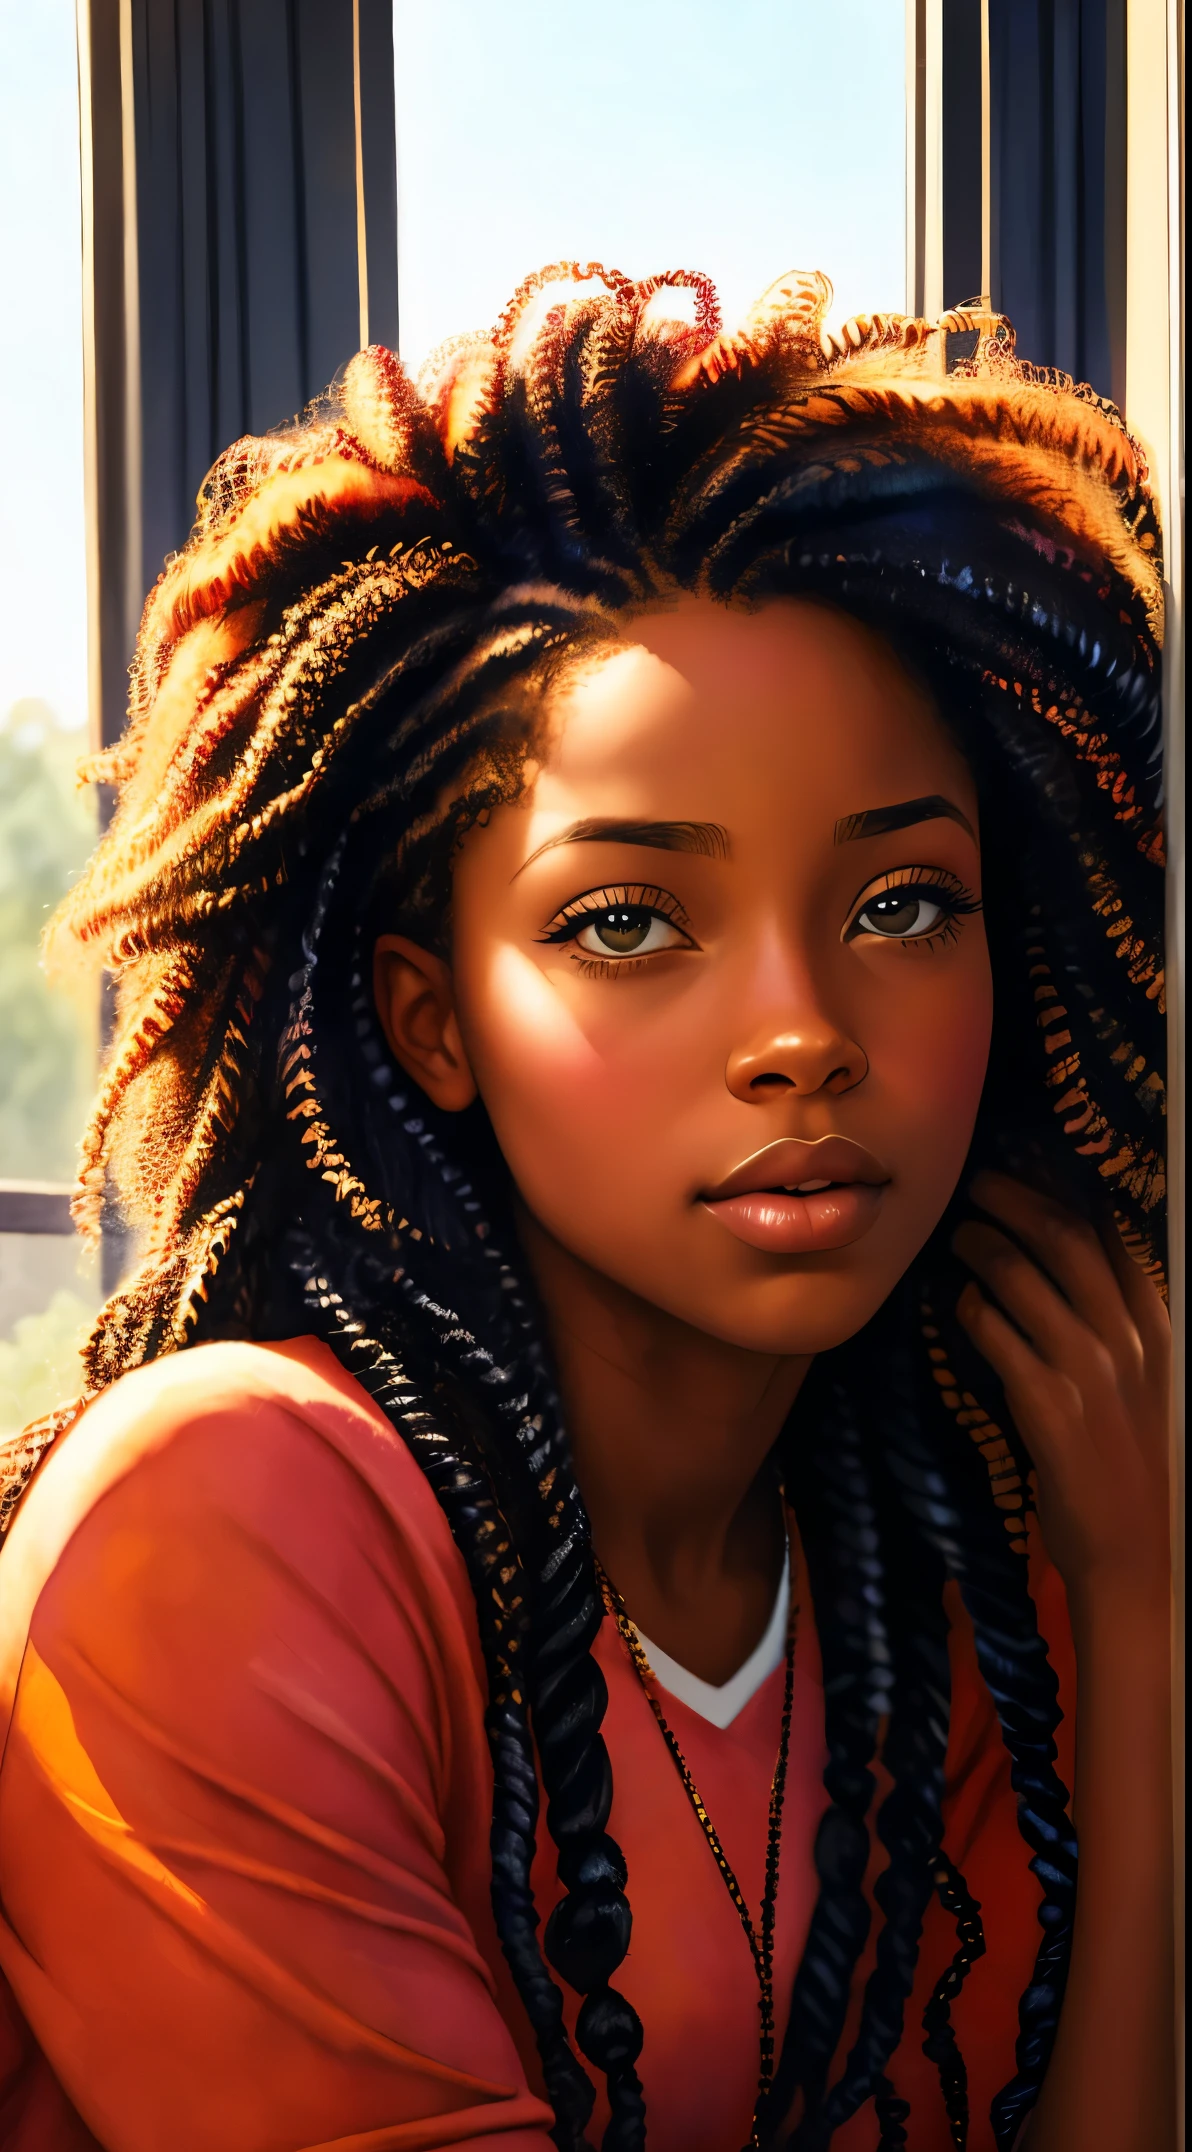 长卷发的女人, 灵感来自 Chinwe Chukwuogo-Roy, 漂亮的黑人女孩, 非洲裔美国女孩, 黑人少女, 坐在窗户旁边, 自然的_光, 水彩肖像, artstration 上的热门趋势, 冷漠的, 闪亮的卷发辫子, 非常详细, 8千, 超高清